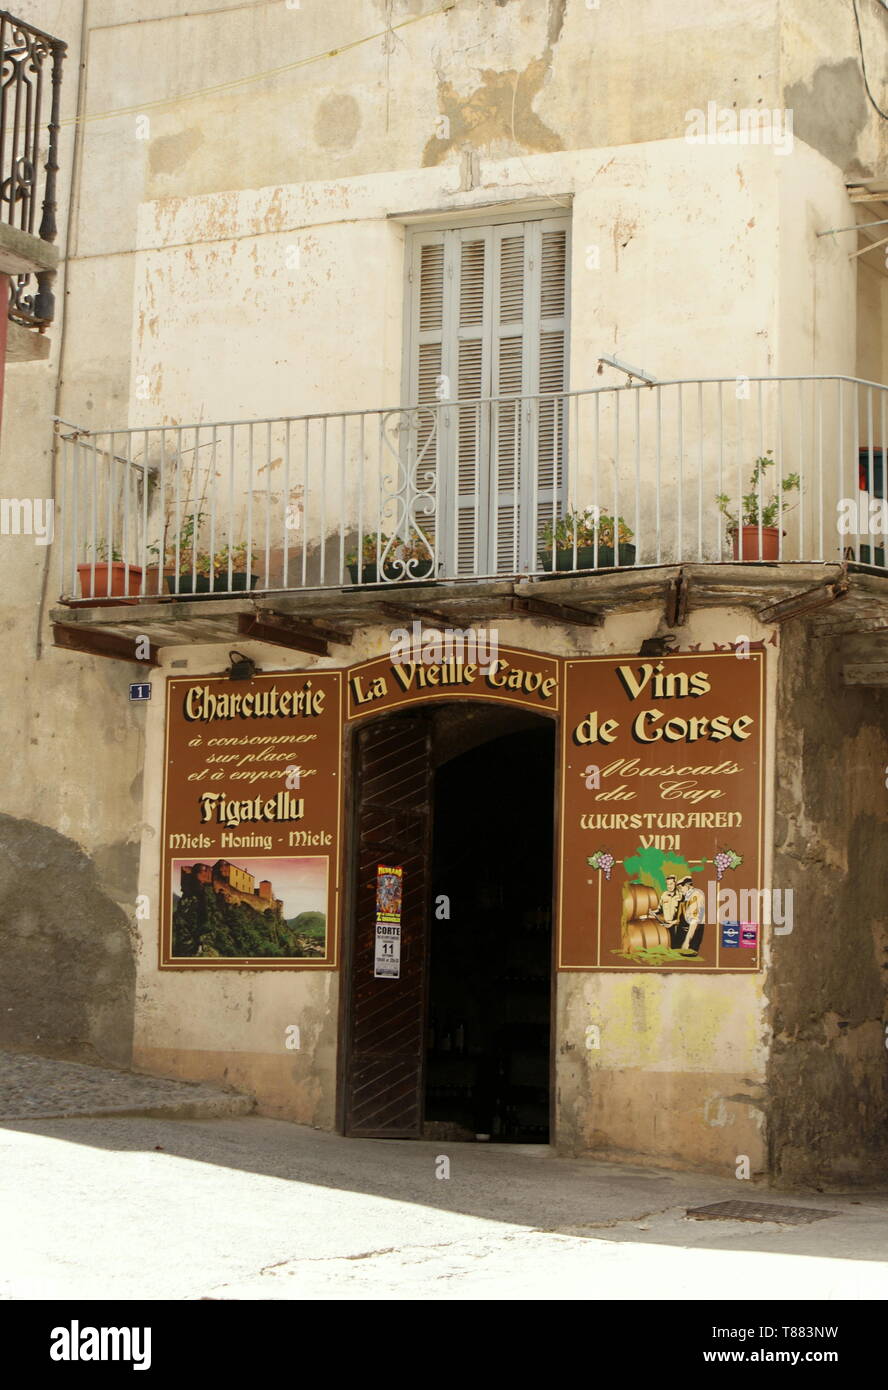 Villaggio locale wine bar e i salumi, Corte, Corsica, Francia Foto Stock